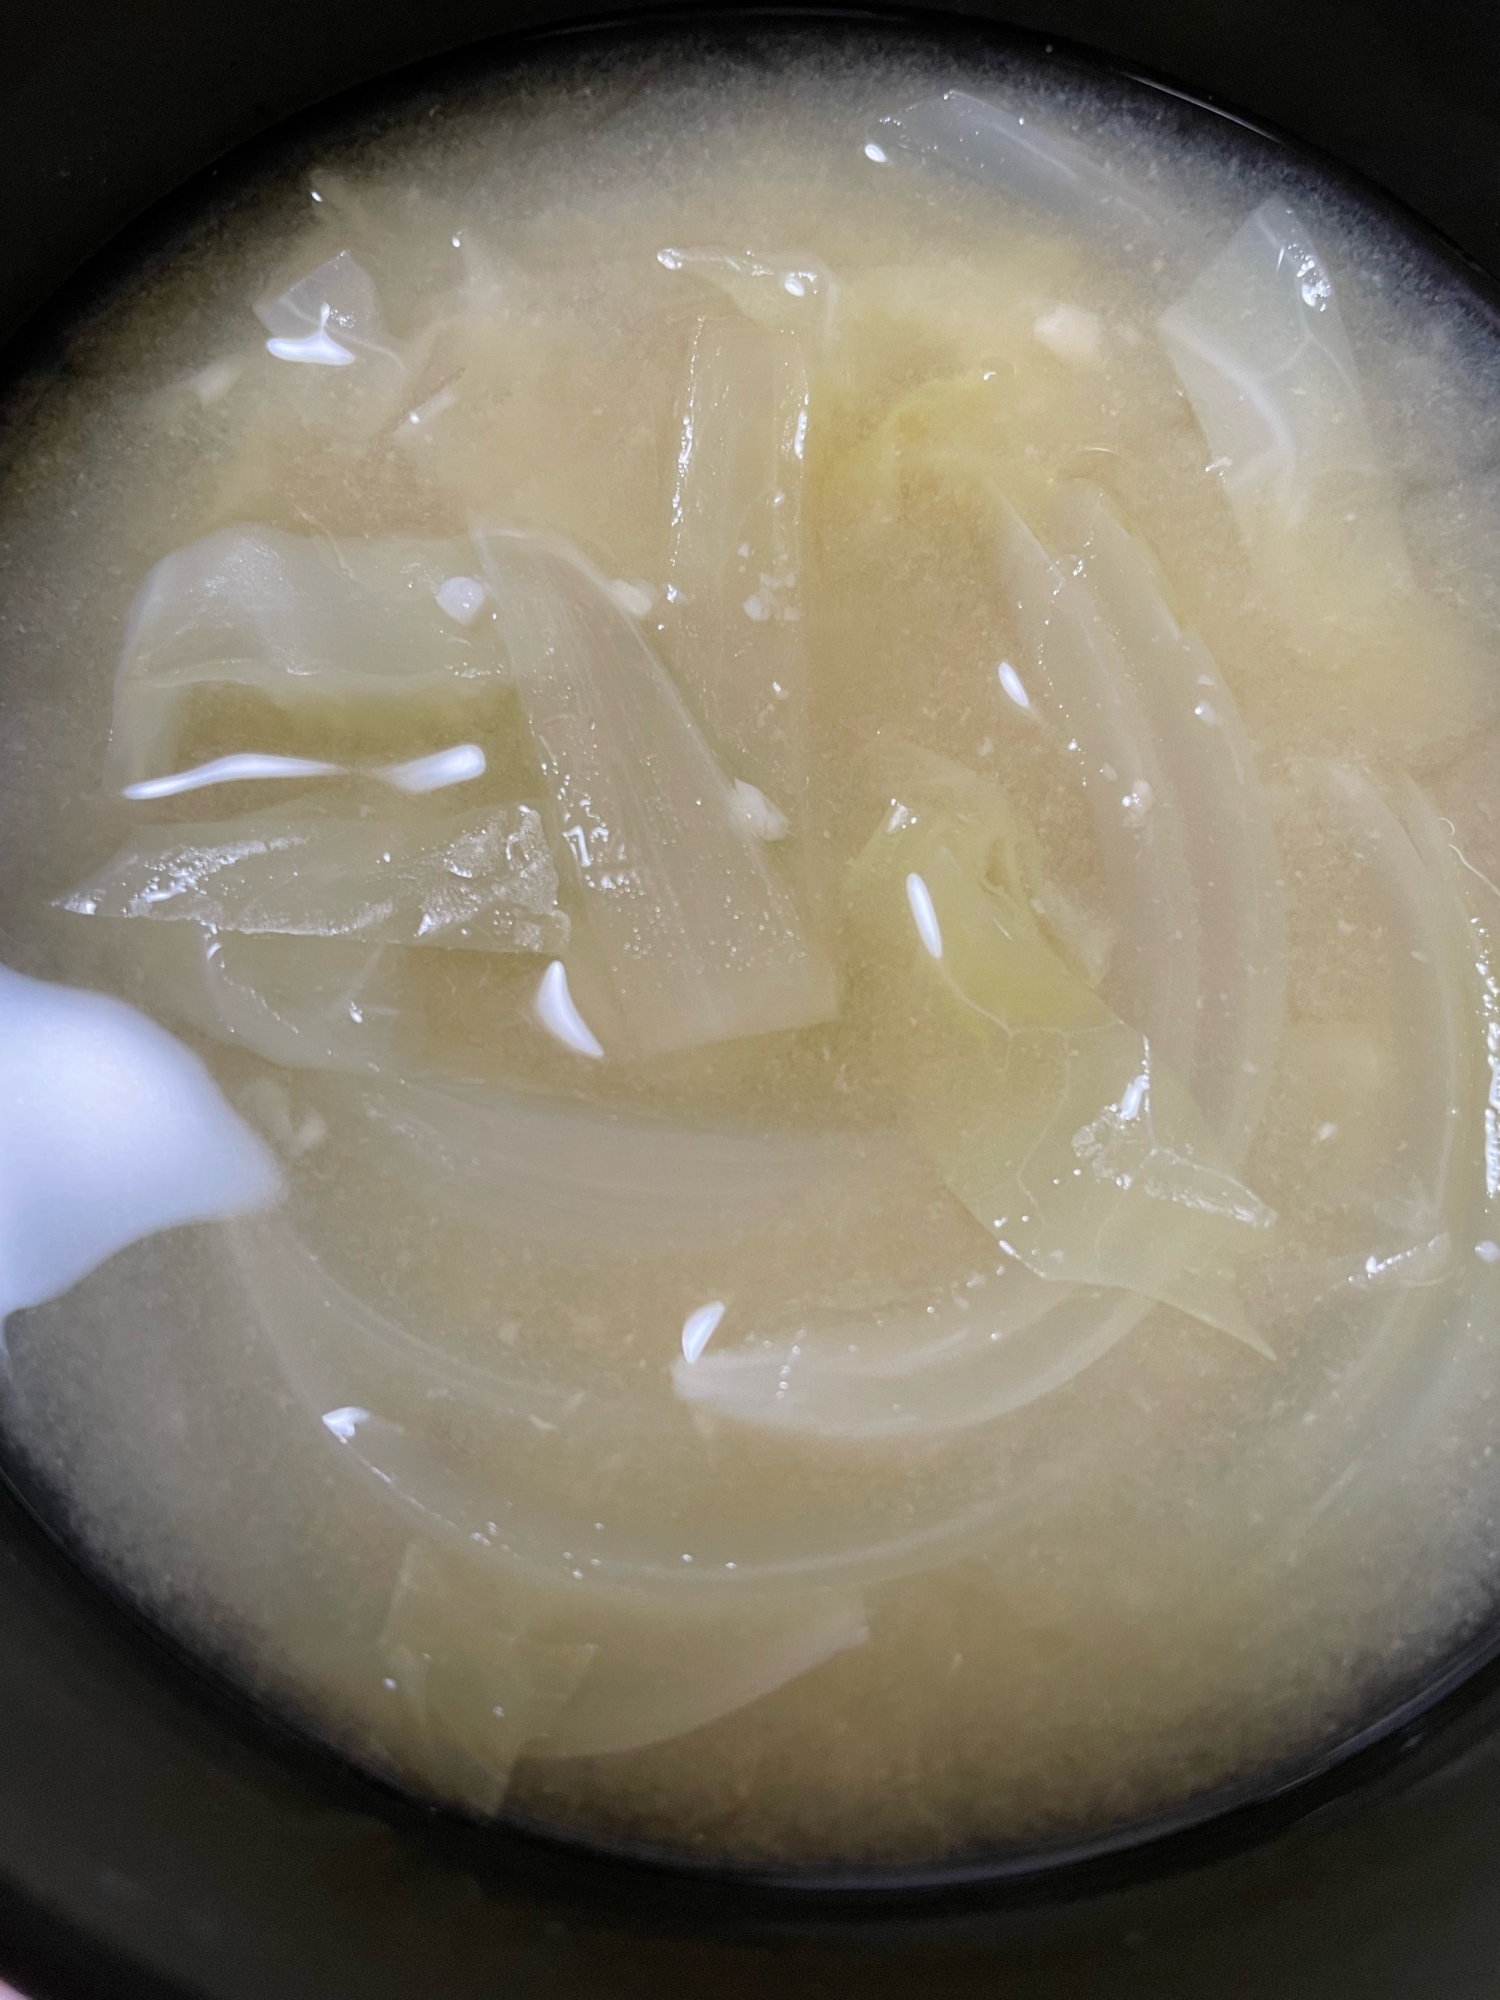 キャベツと玉ねぎの味噌汁